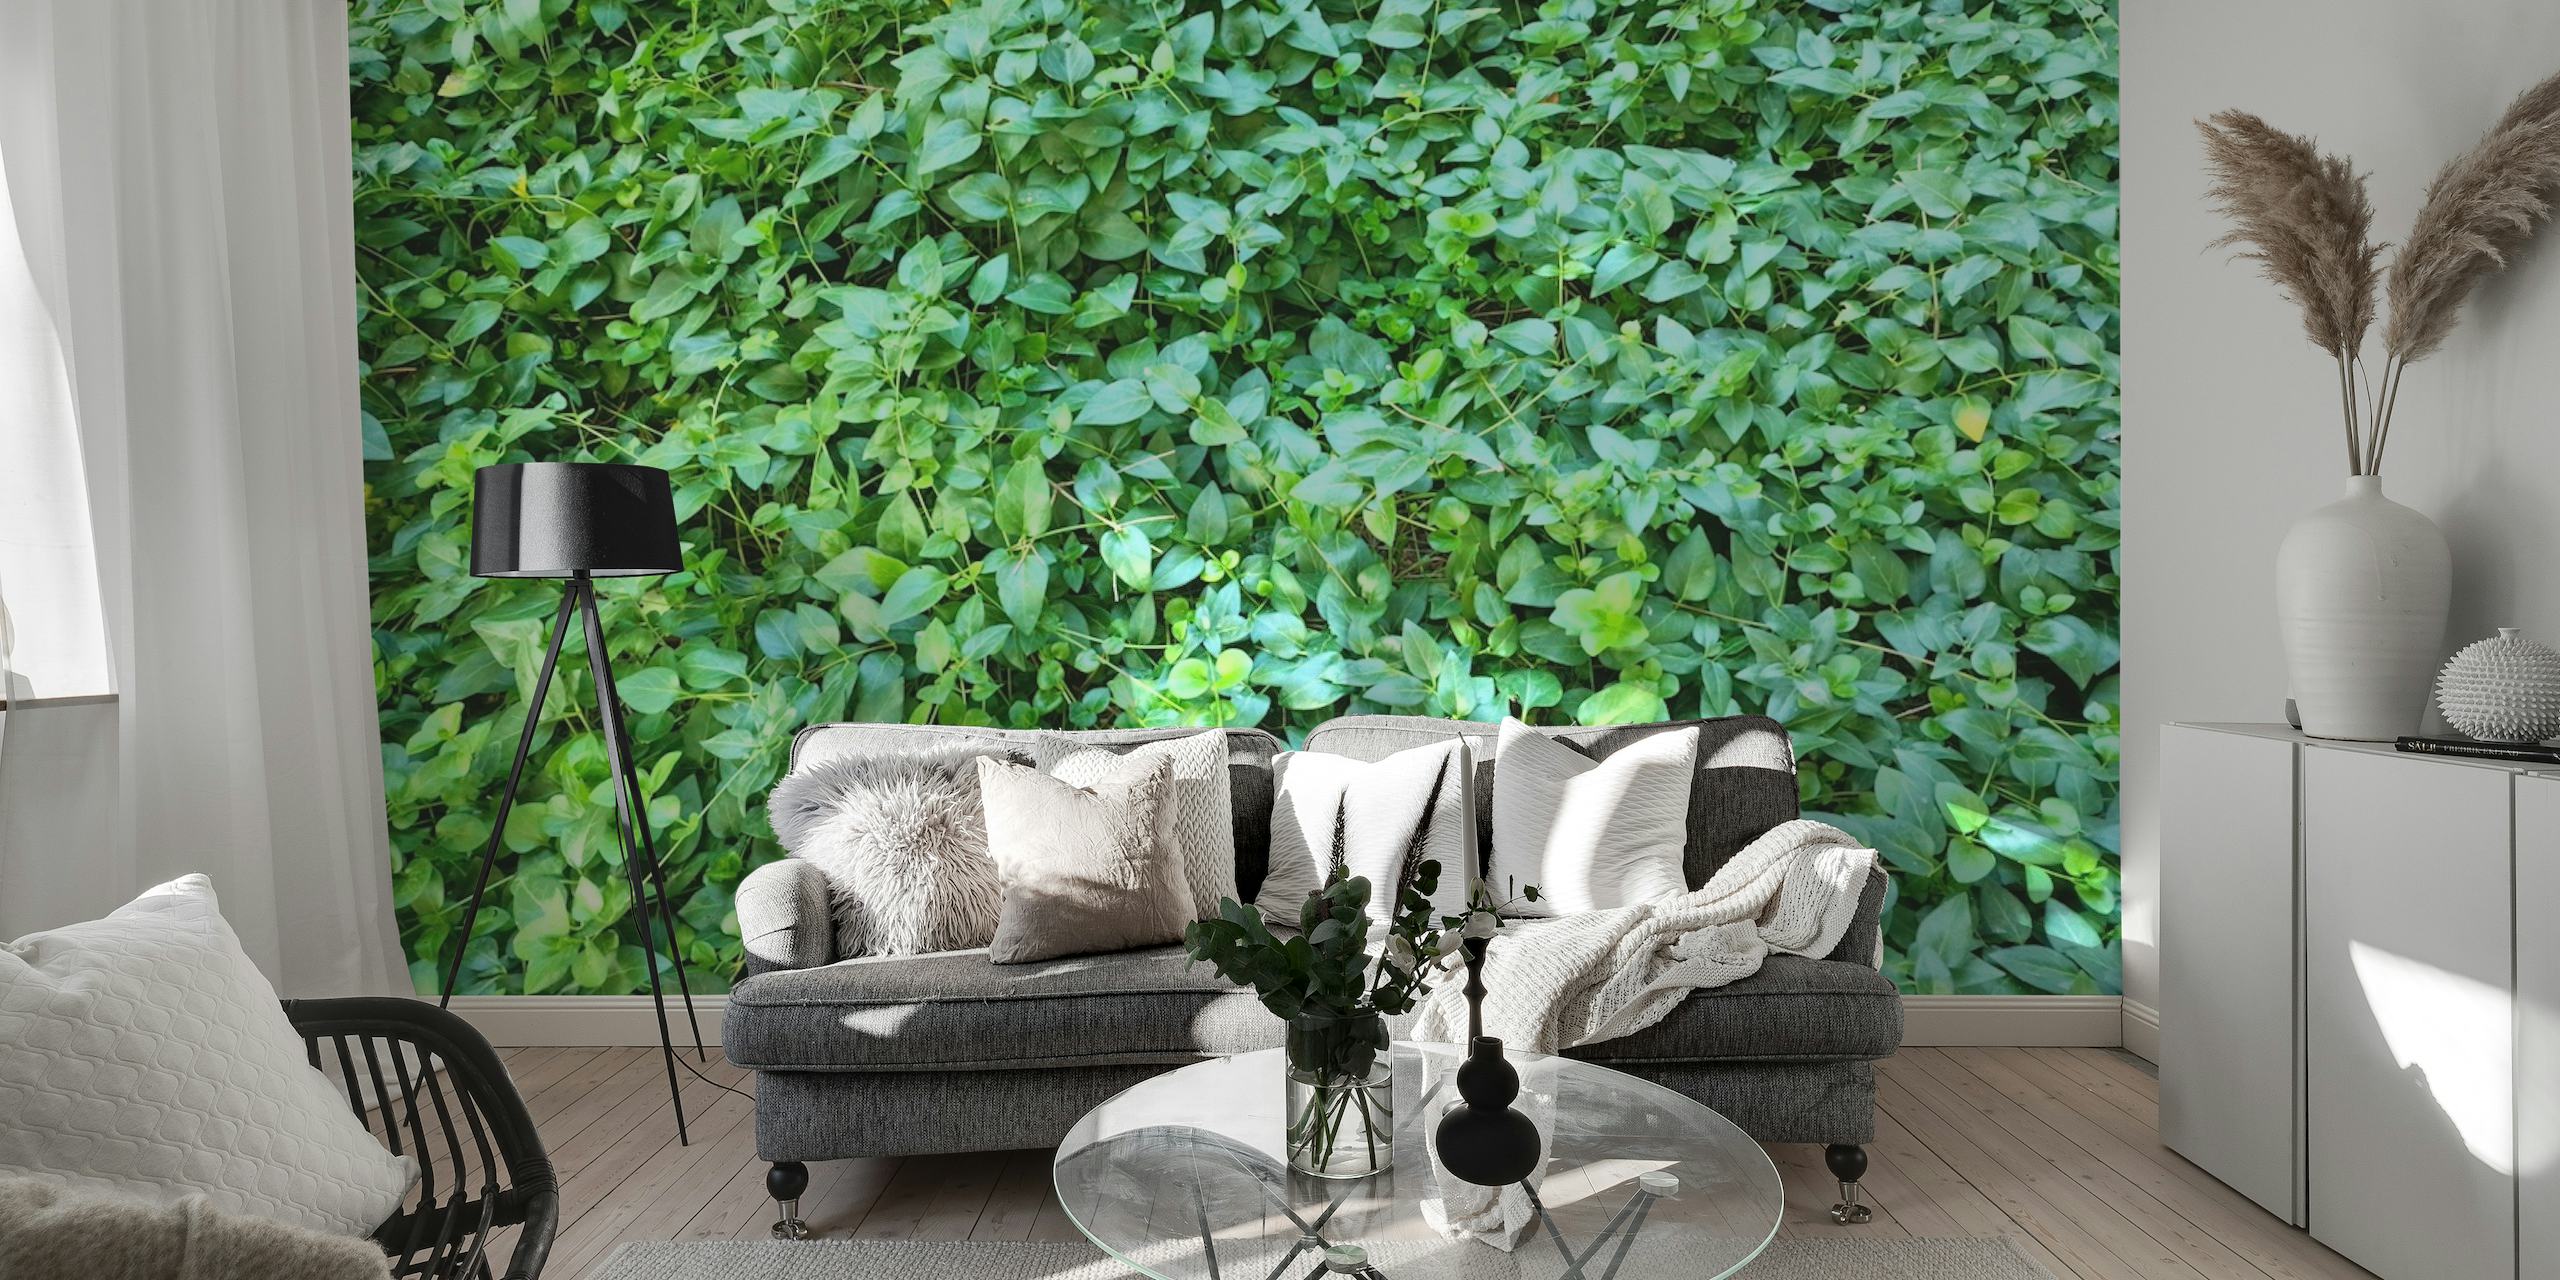 Fotomural de exuberante vegetación con follaje denso para una decoración interior relajante